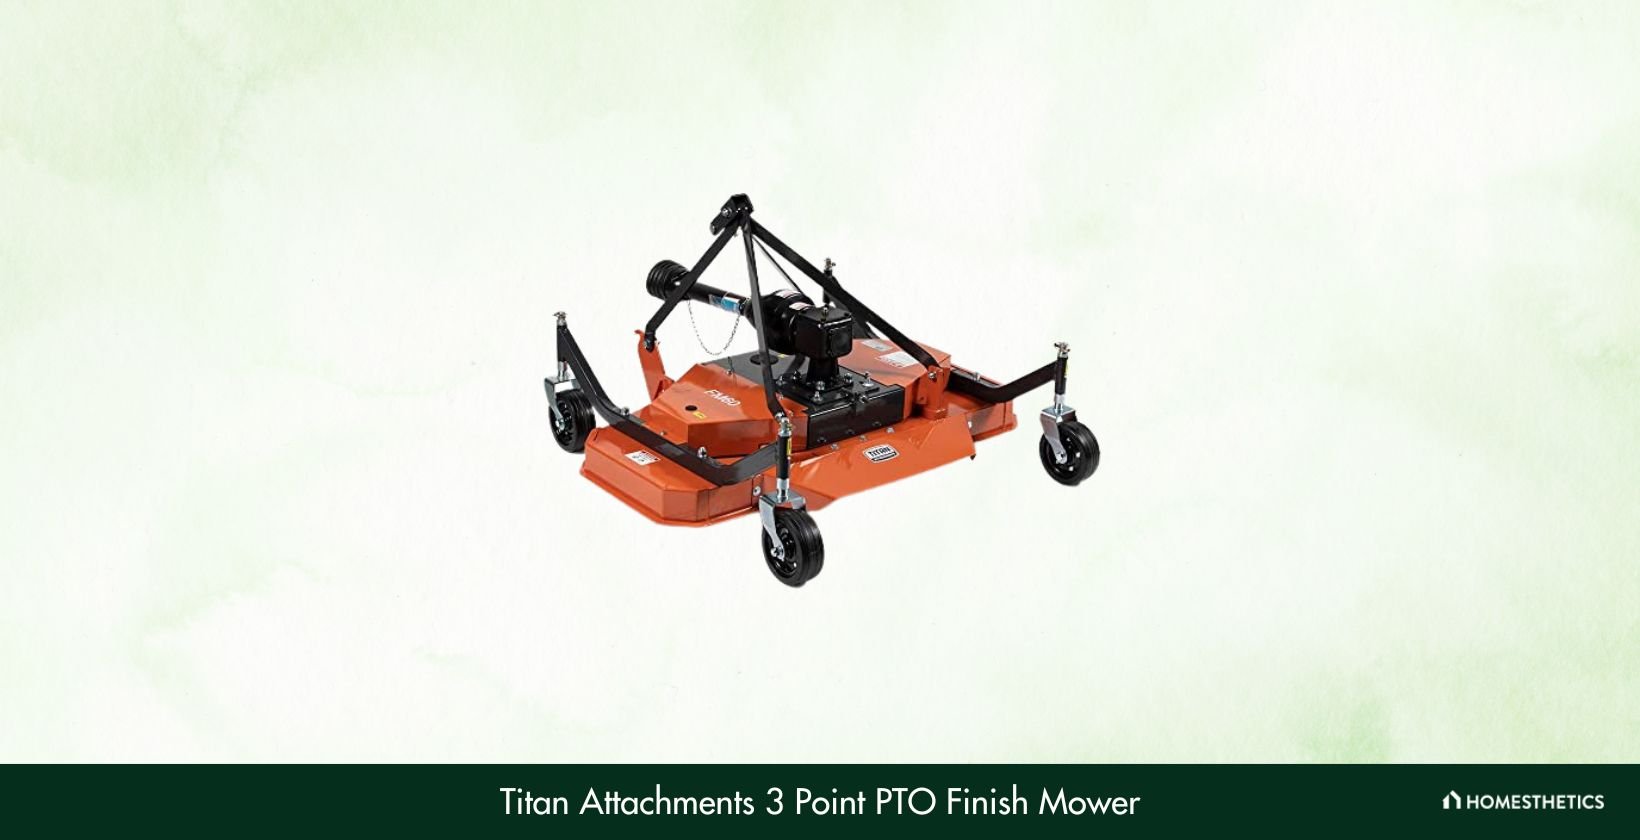 Titan Attachments 3 Point PTO Finish Mower